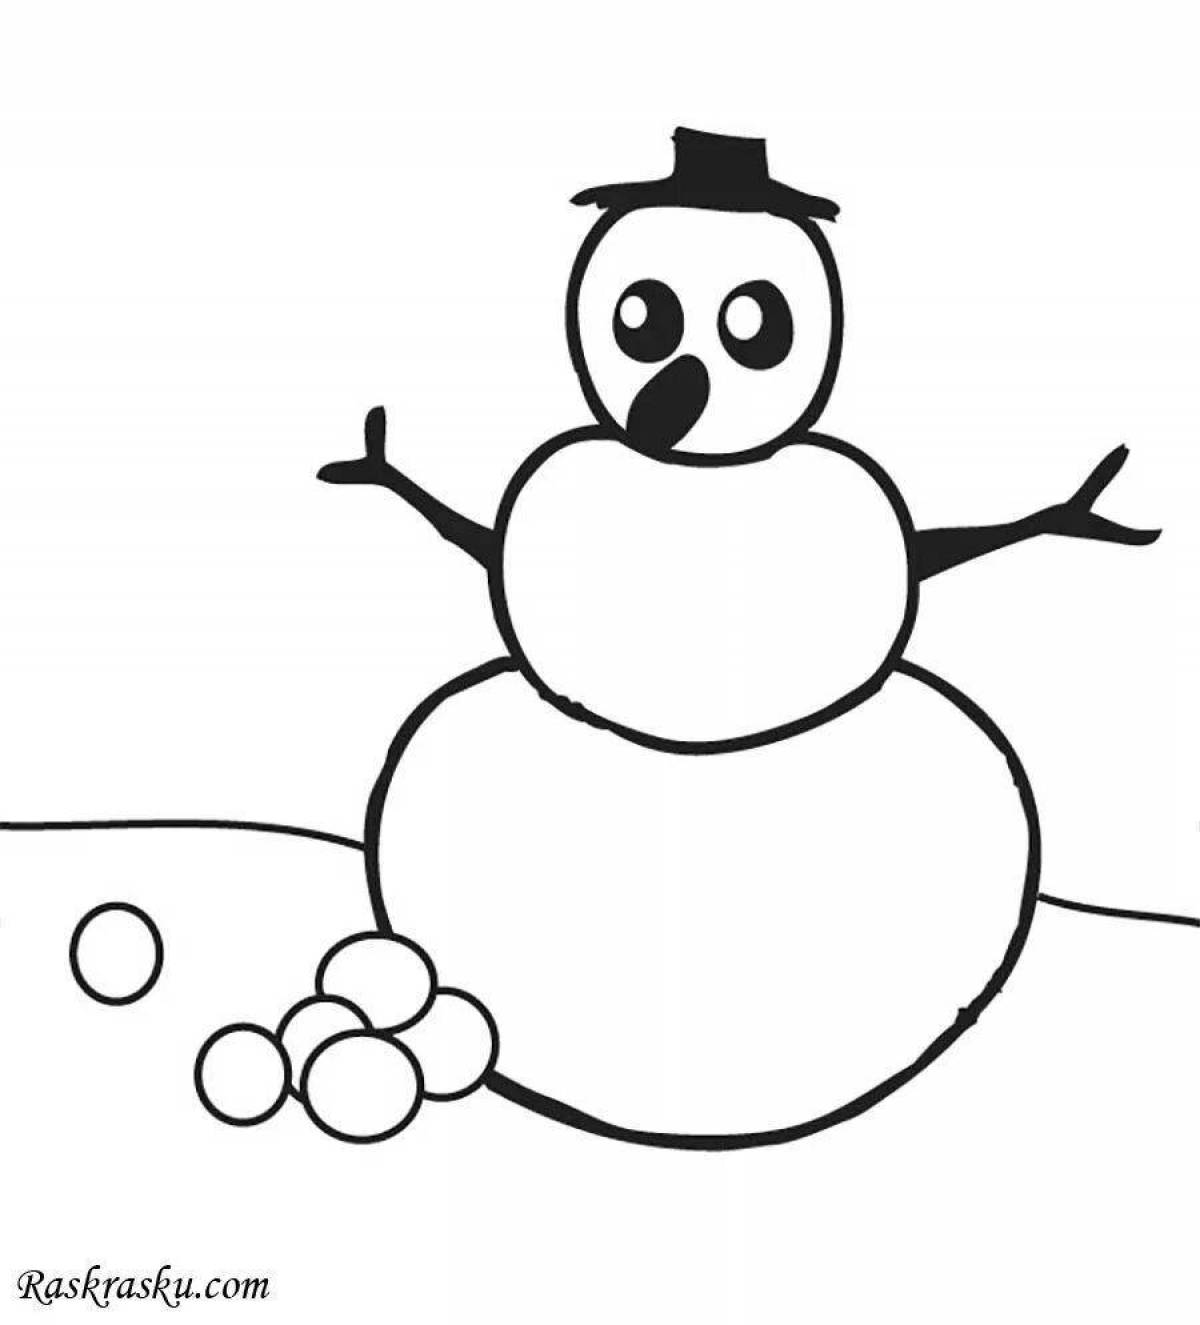 Светящаяся раскраска снеговик для детей